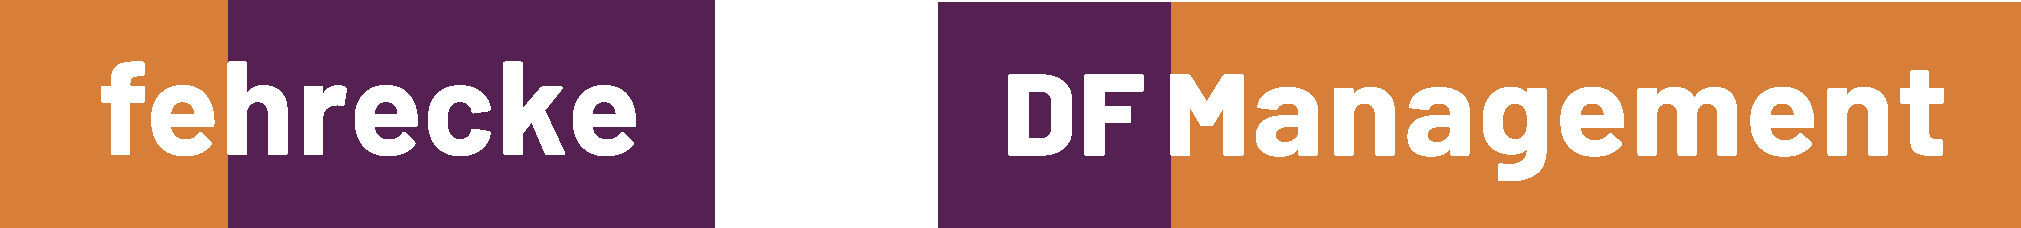 Fehrecke und DF Management Logo